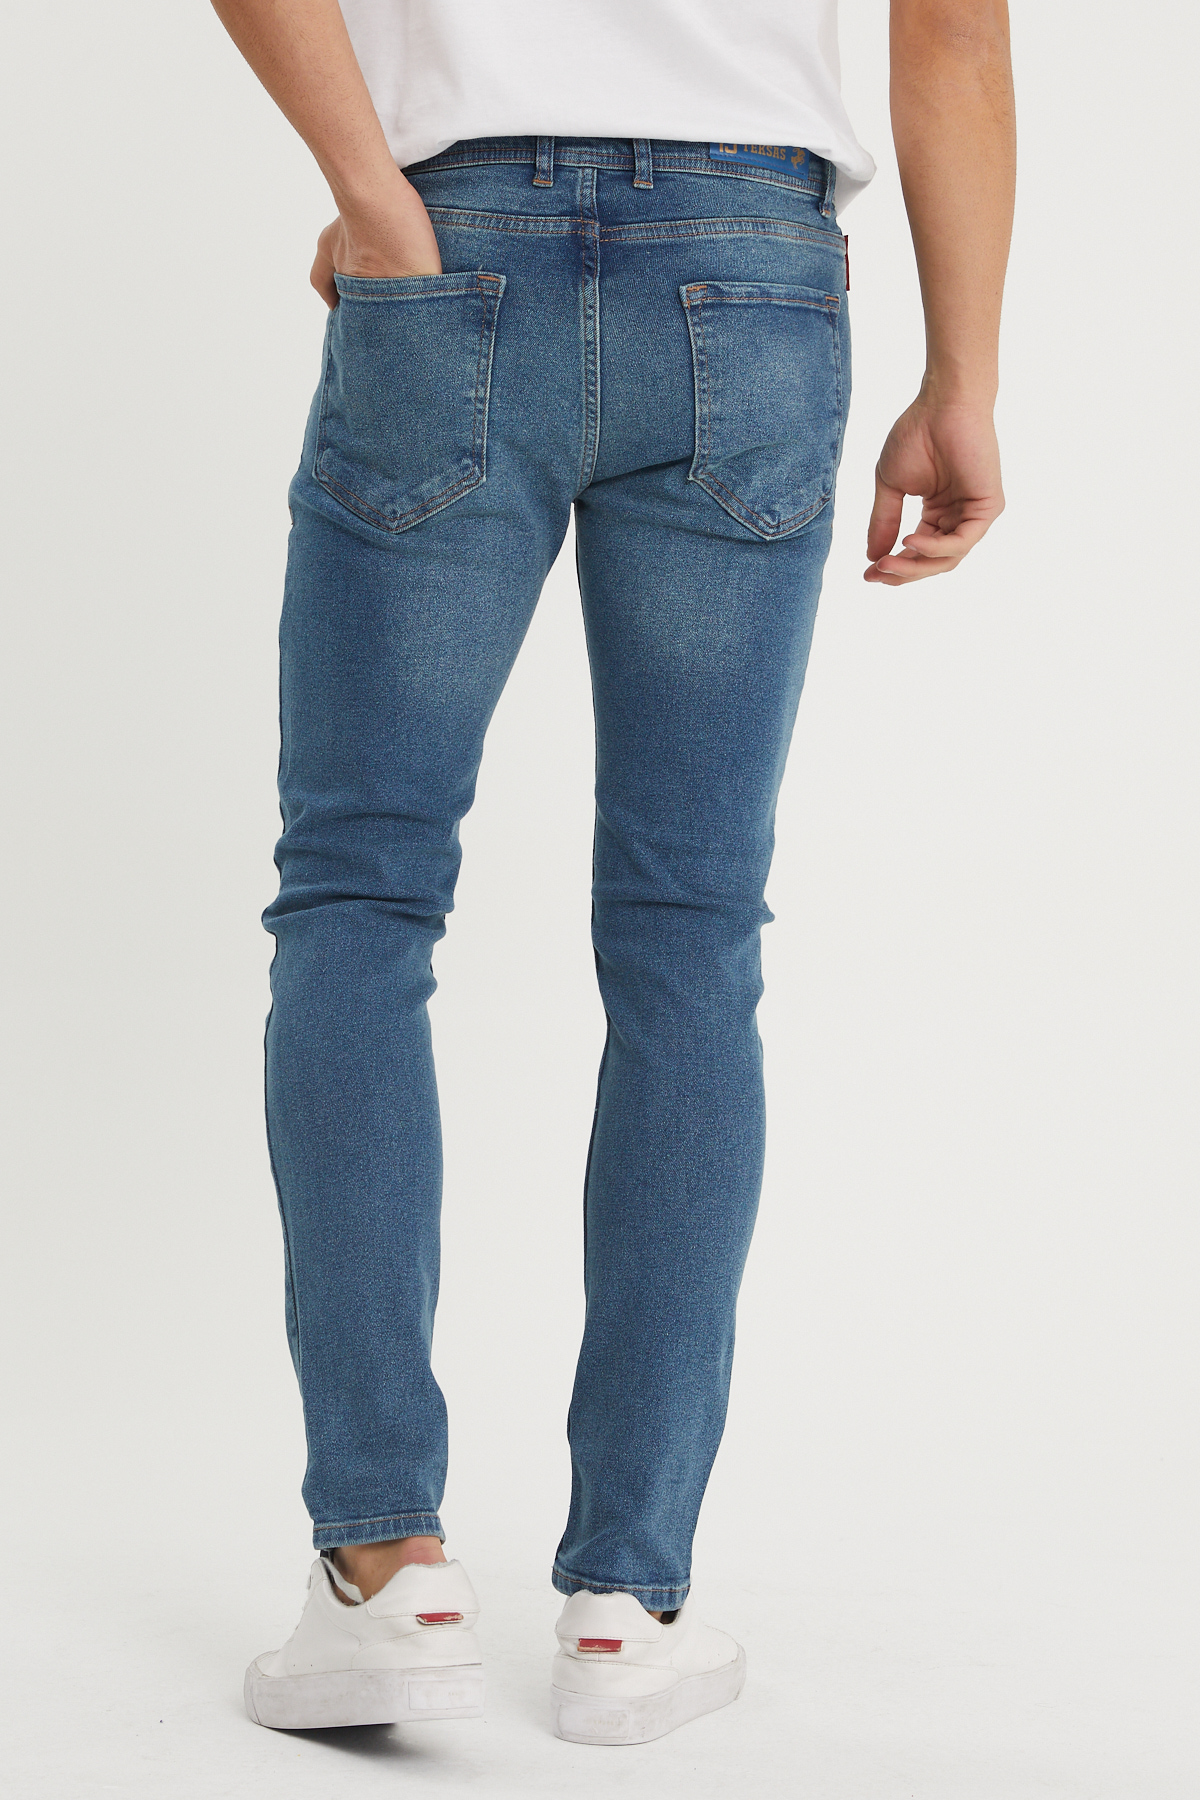 Mavi Slim Fit Jean Pantolon 1KXE5-44352-12 - 3